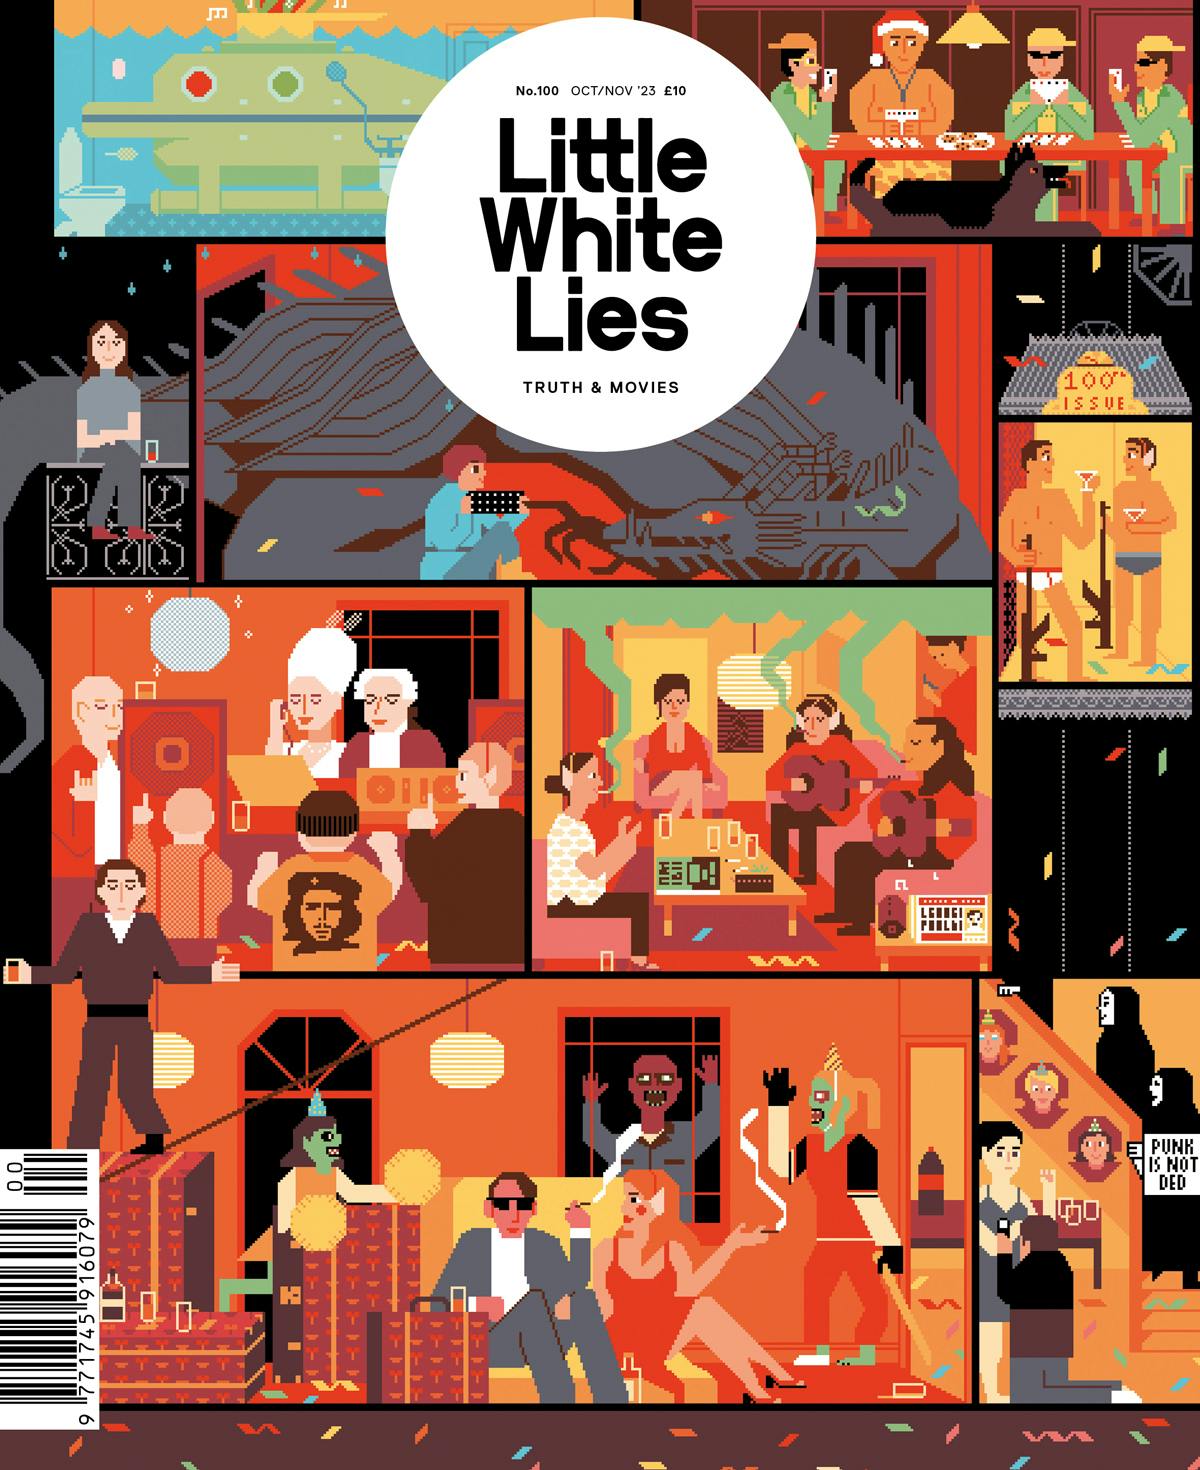 Little White Lies magazine